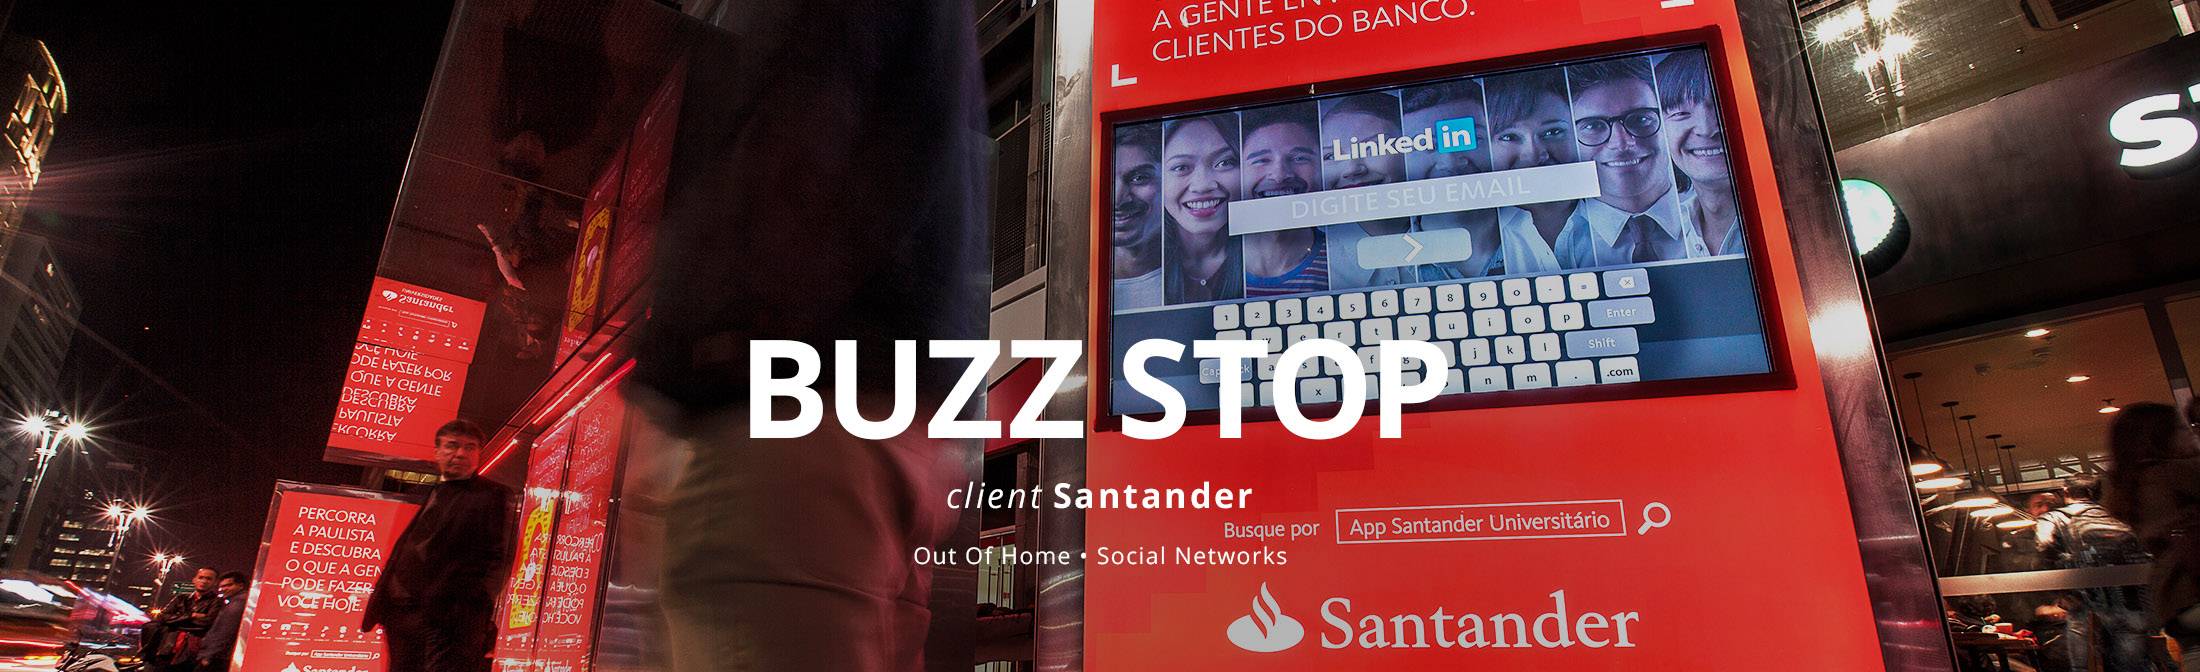 Santander_BuzzStop_02